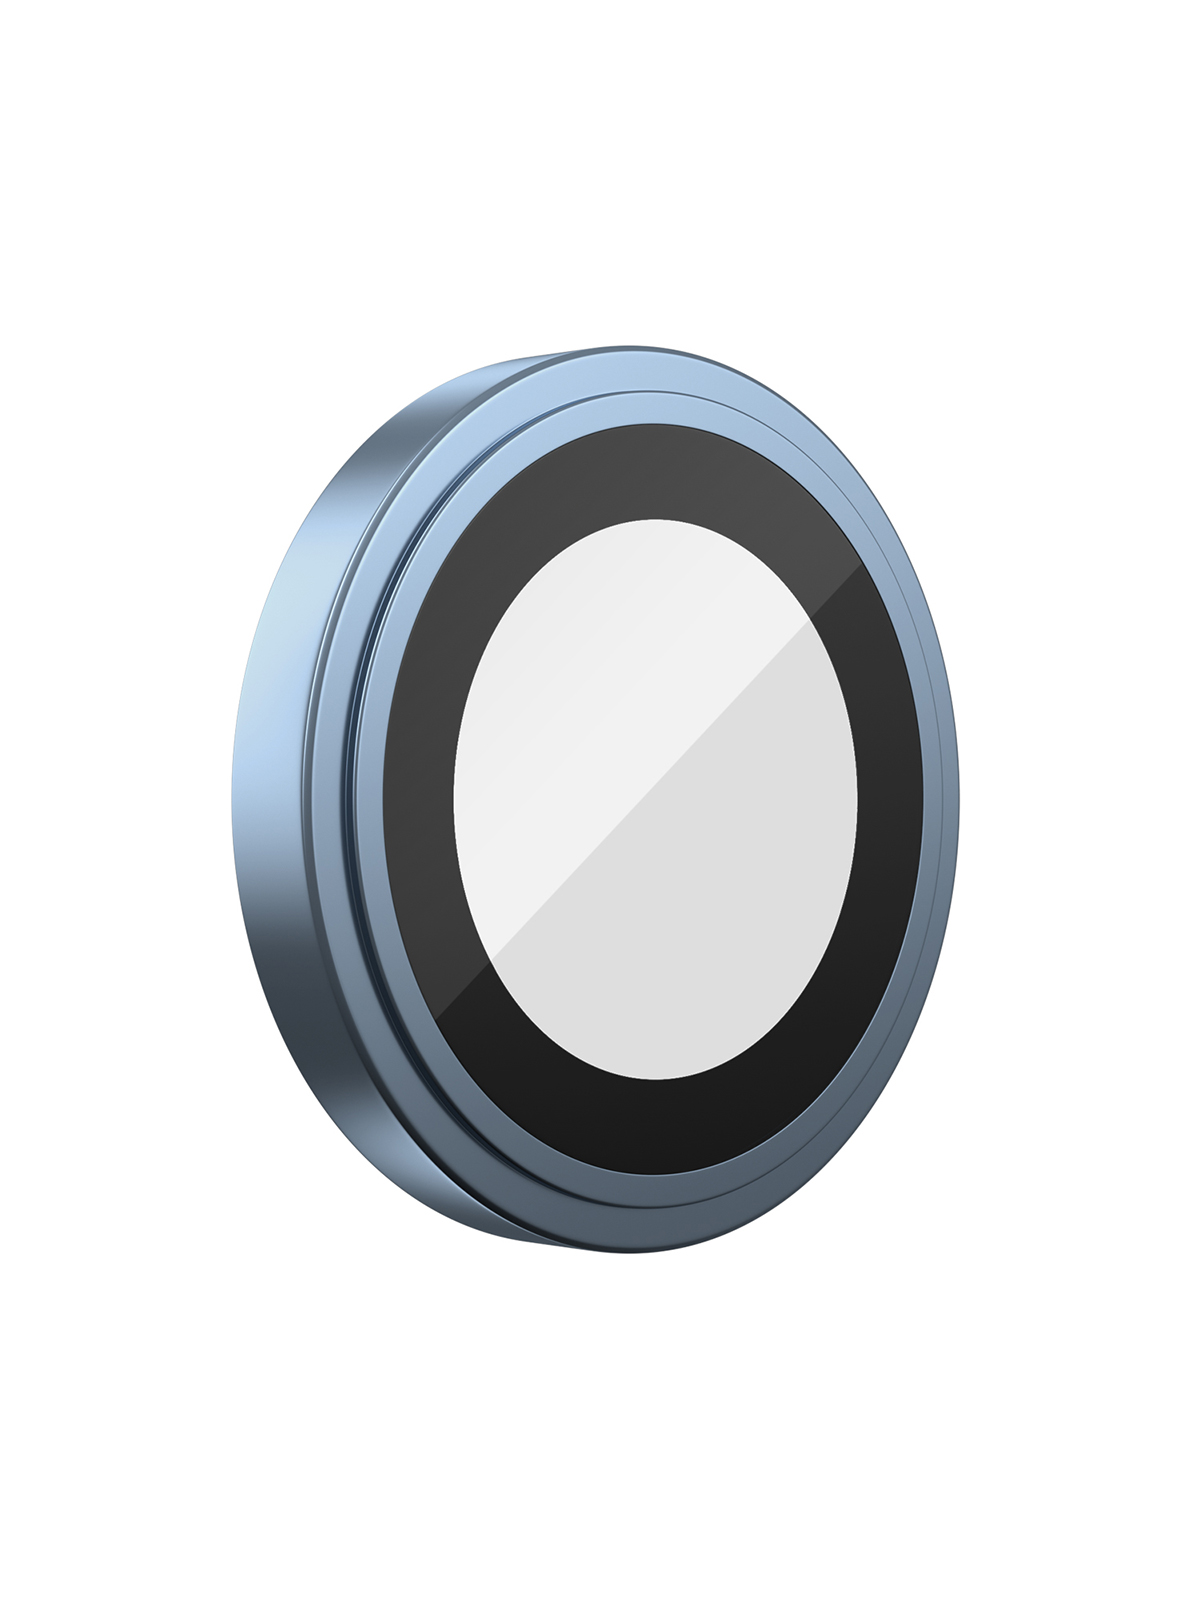 

Защитное стекло BlueO для камеры iPhone 11/12/12 mini 2 шт Blue, Camera ARMOR lens